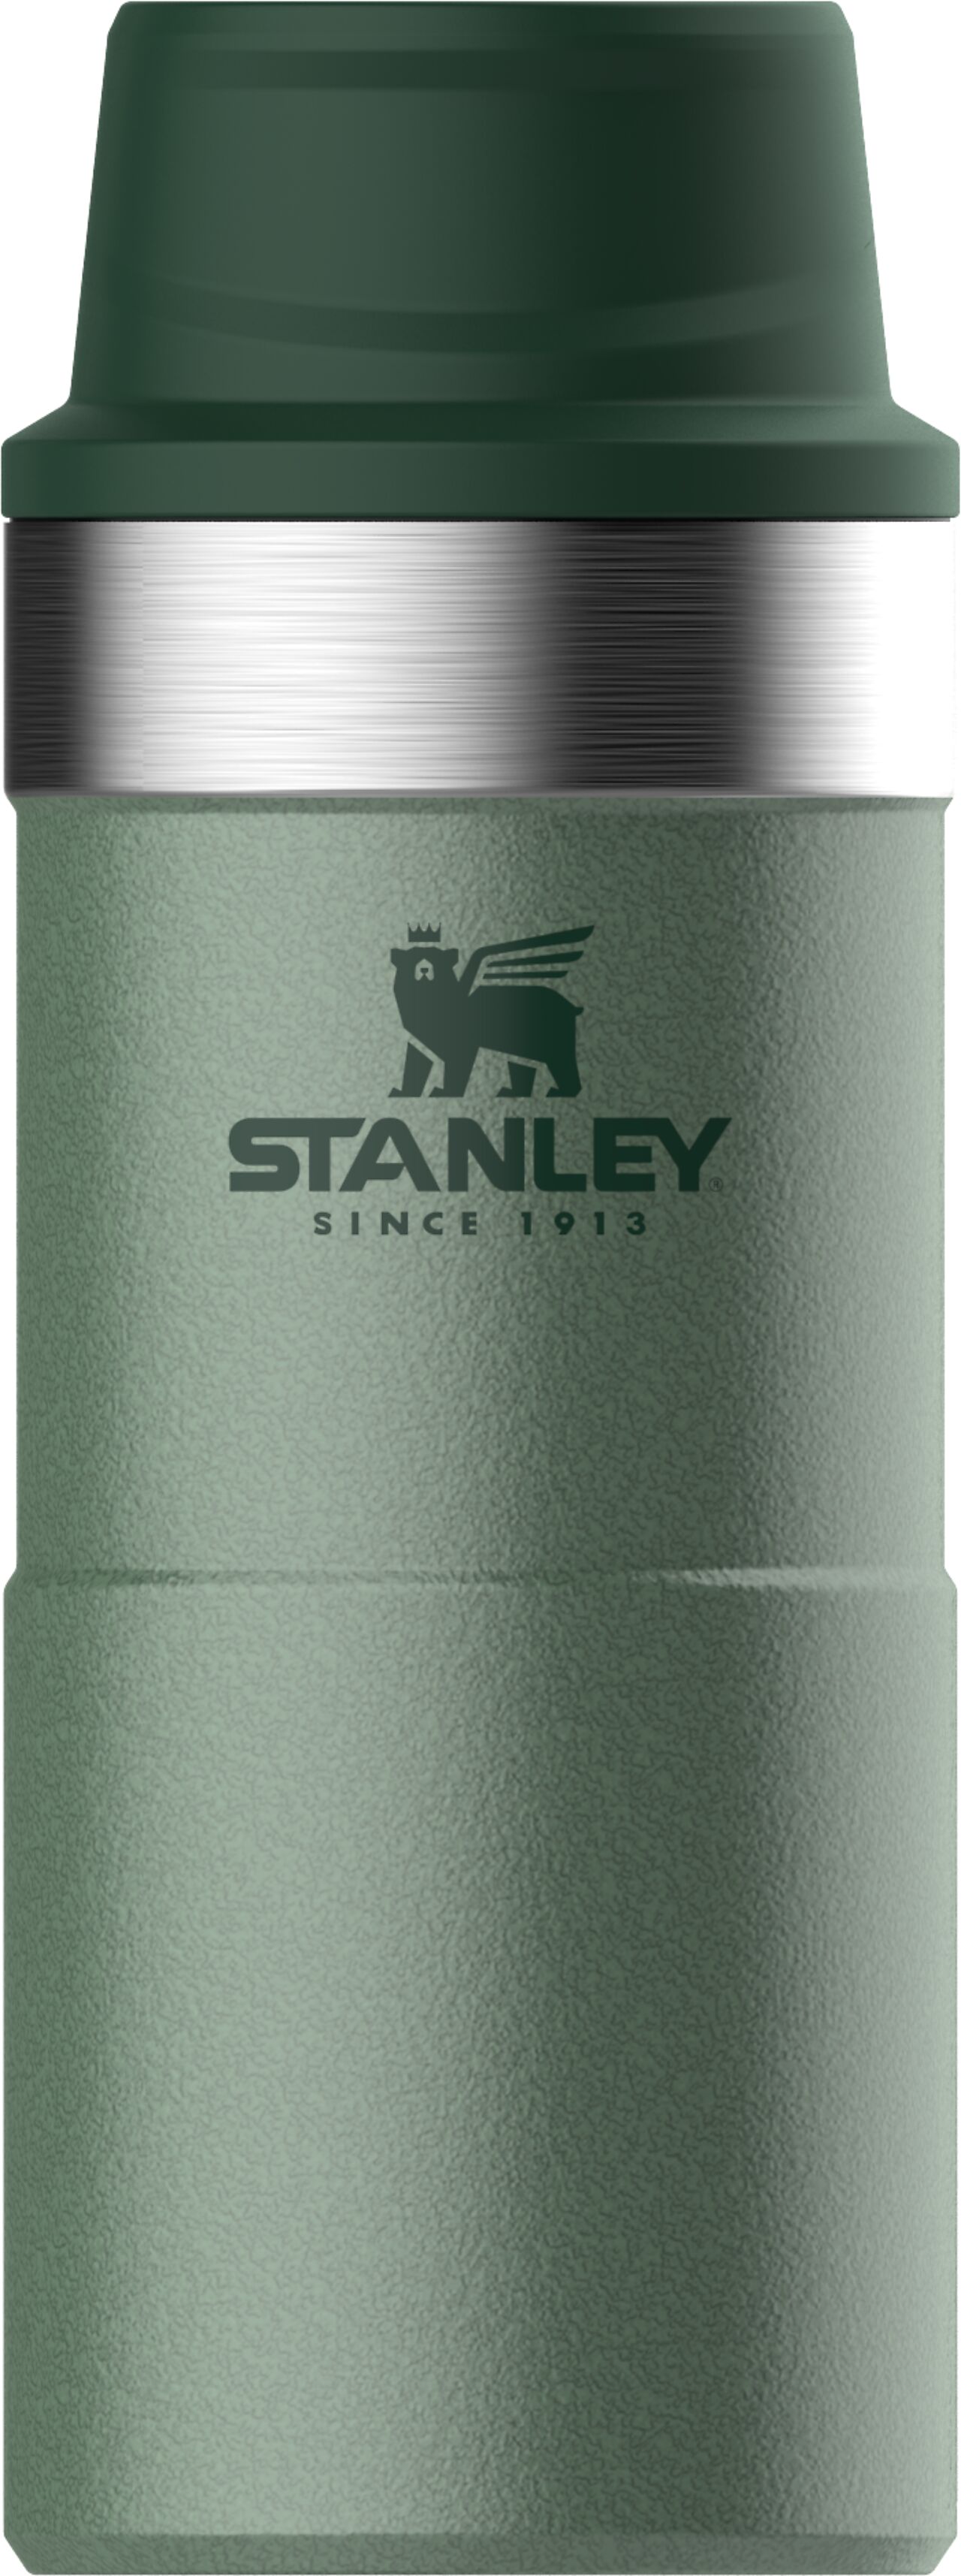 Stanley Stanley Trigger termokopp 0,35 liter 1